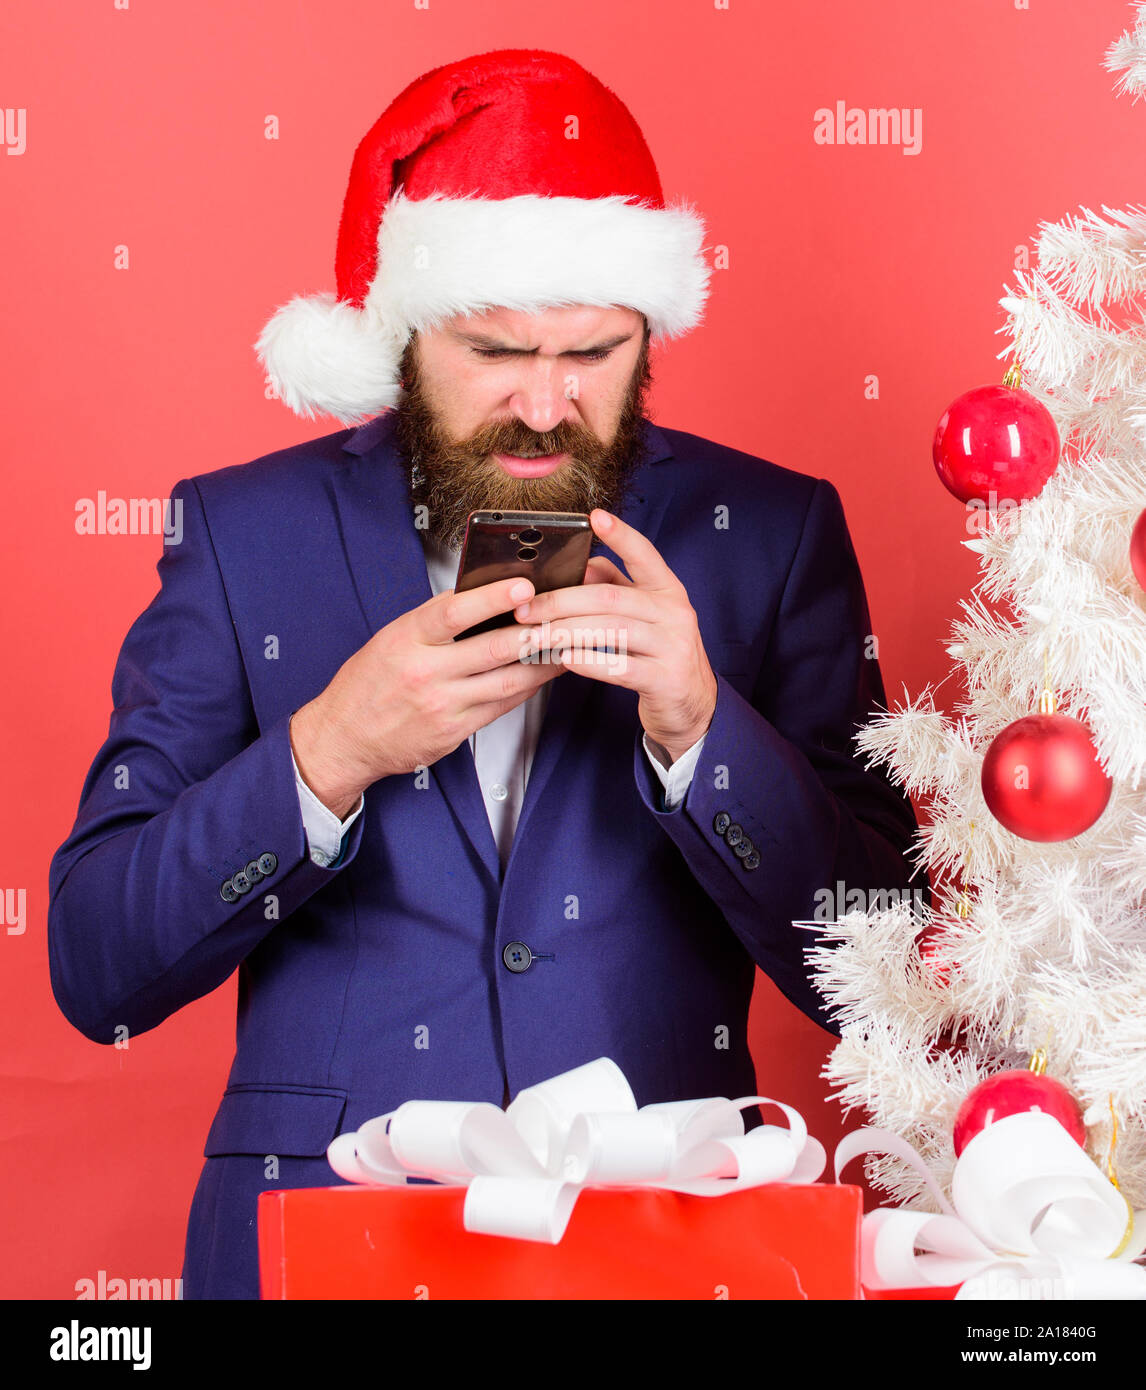 Gruß an Weihnachten mobile Nachricht senden. Kurze Weihnachten wünscht.  Manager und Kollegen gratulieren online. Lesen Sie mehr Weihnachten Gruß.  Man bärtige Hipster tragen Anzug und Santa hat halten Smartphone  Stockfotografie - Alamy